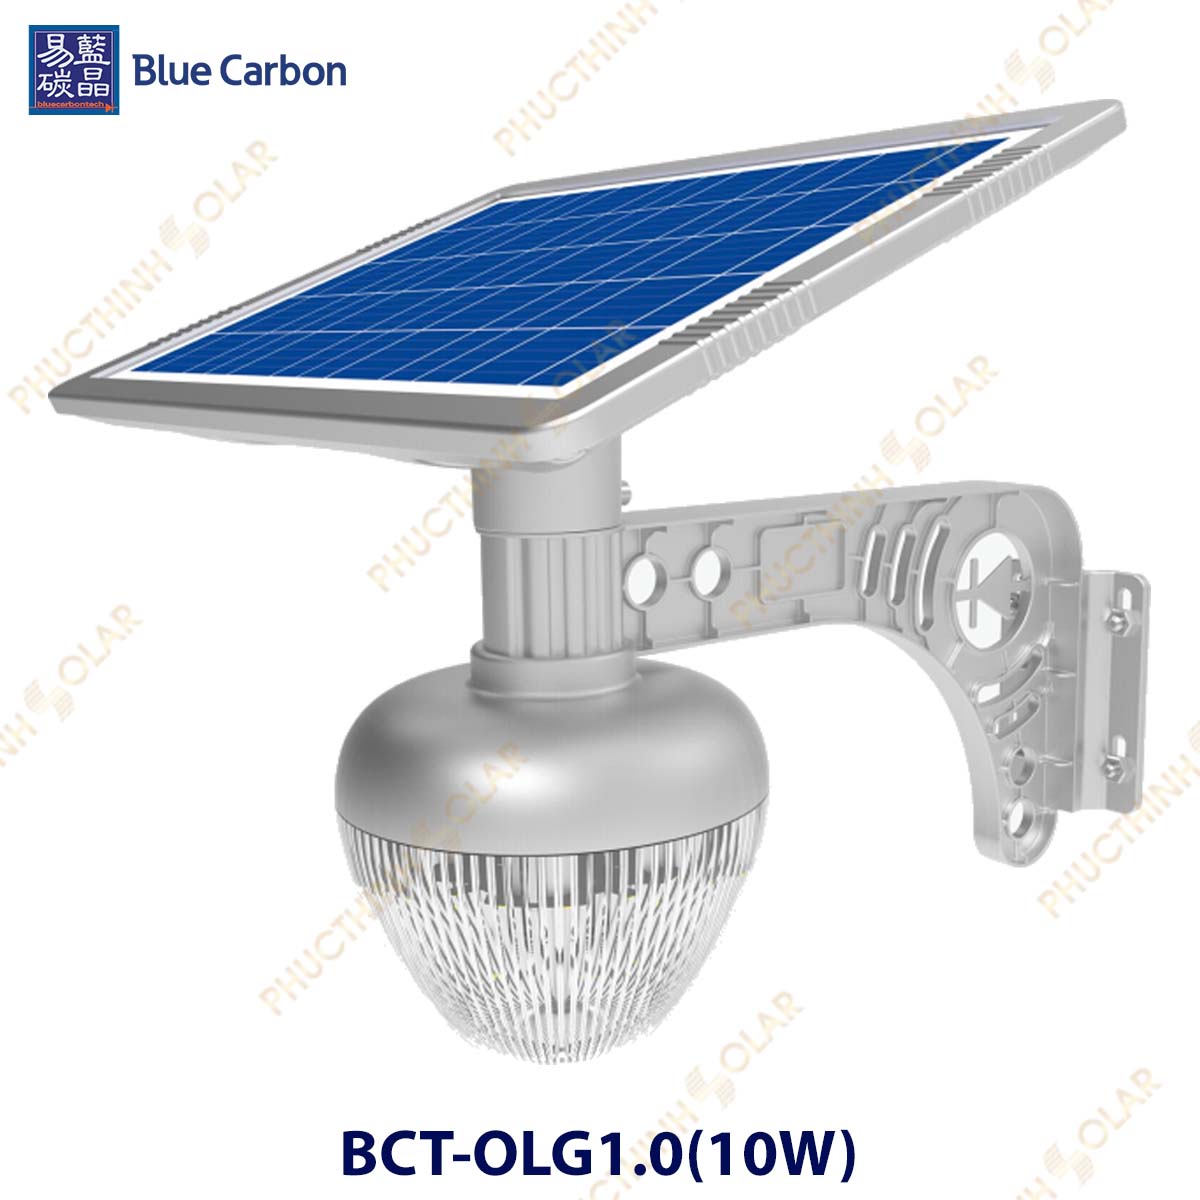 Đèn sân vườn năng lượng mặt trời 10W Blue Carbon BCT-OLG1.0